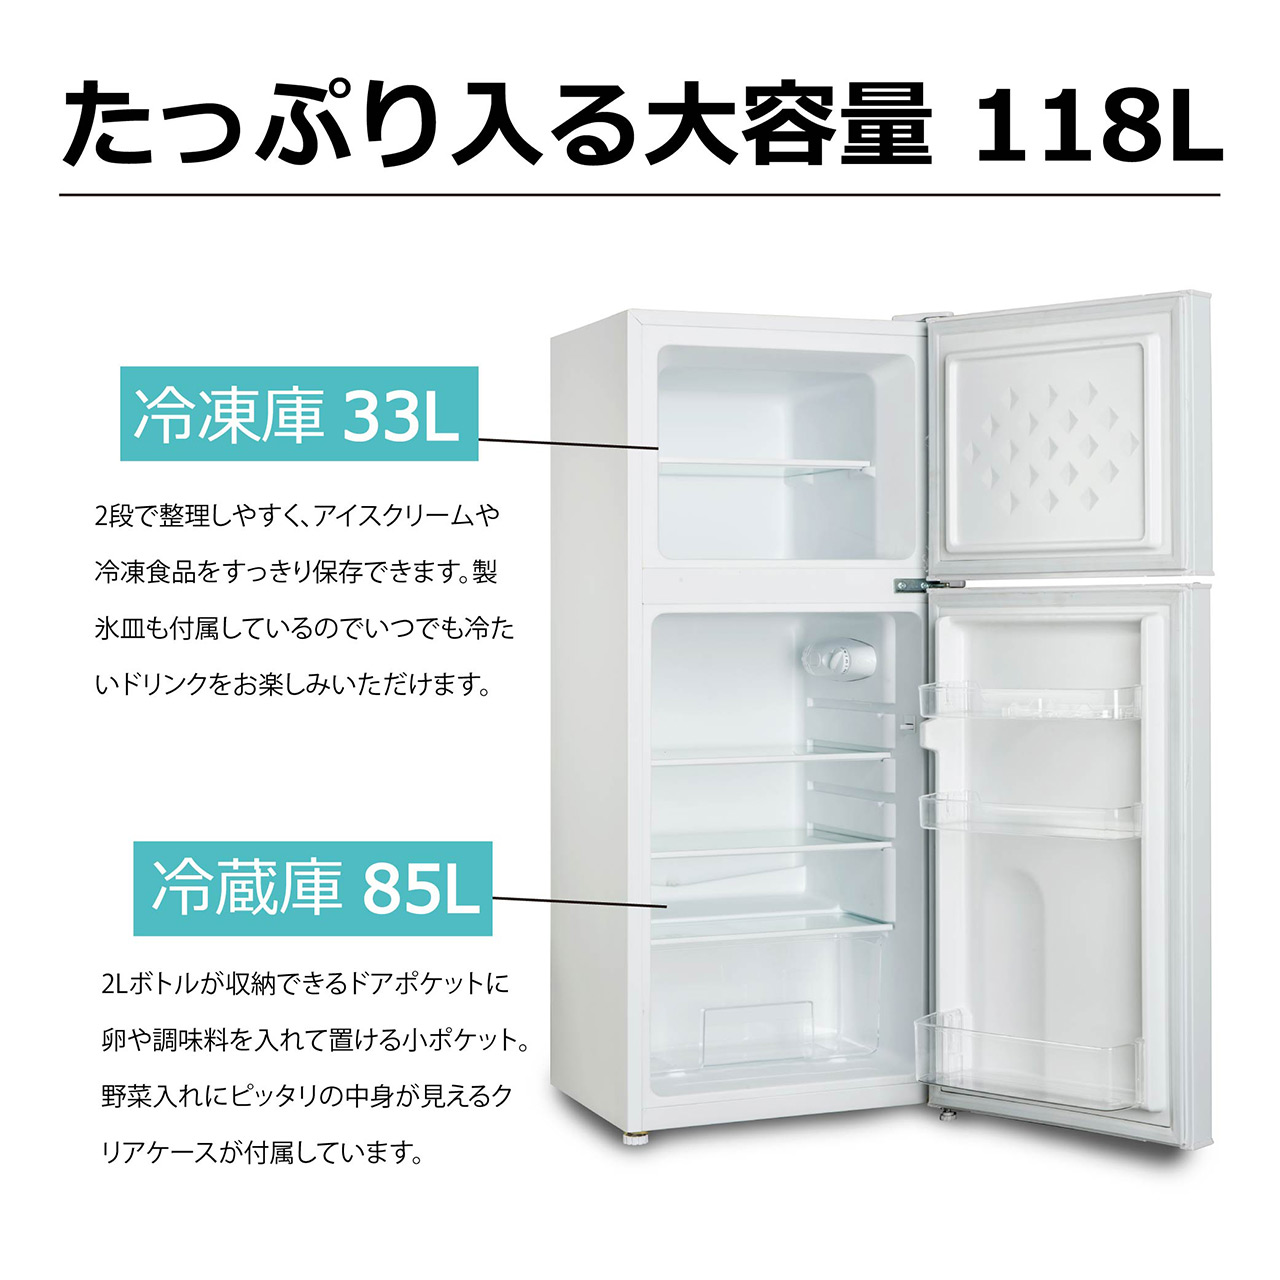 2ドア冷凍冷蔵庫 118L TH-118L2-WH : 製品一覧